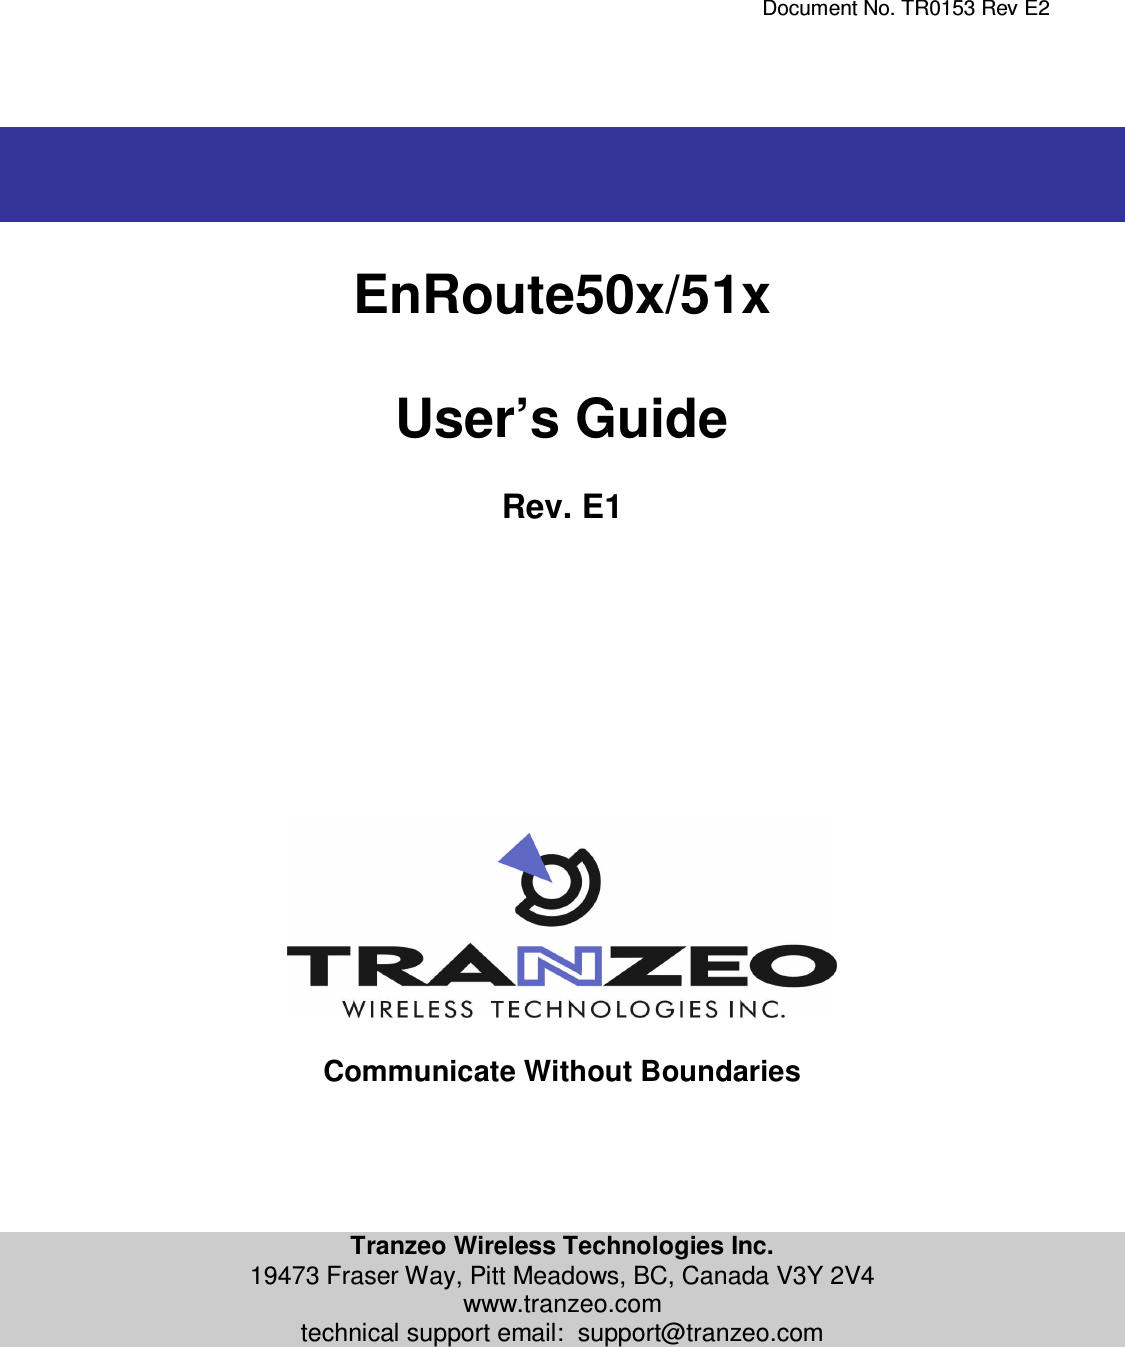     Document No. TR0153 Rev E2     EnRoute50x/51x  User’s Guide  Rev. E1                   Communicate Without Boundaries      Tranzeo Wireless Technologies Inc. 19473 Fraser Way, Pitt Meadows, BC, Canada V3Y 2V4 www.tranzeo.com technical support email:  support@tranzeo.com   